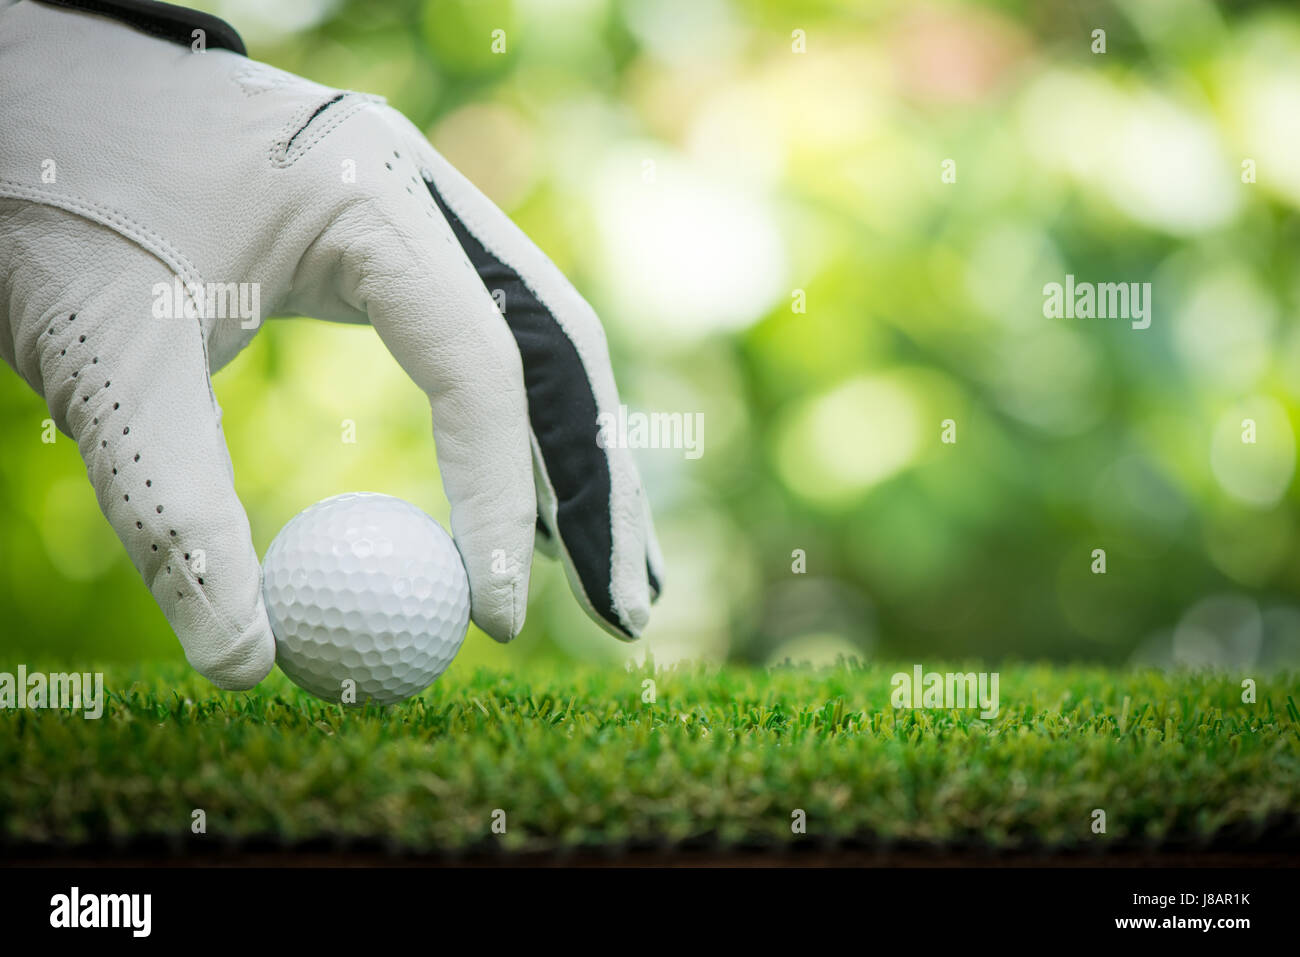 Los jugadores de golf mano colocando la bola sobre el césped Foto de stock